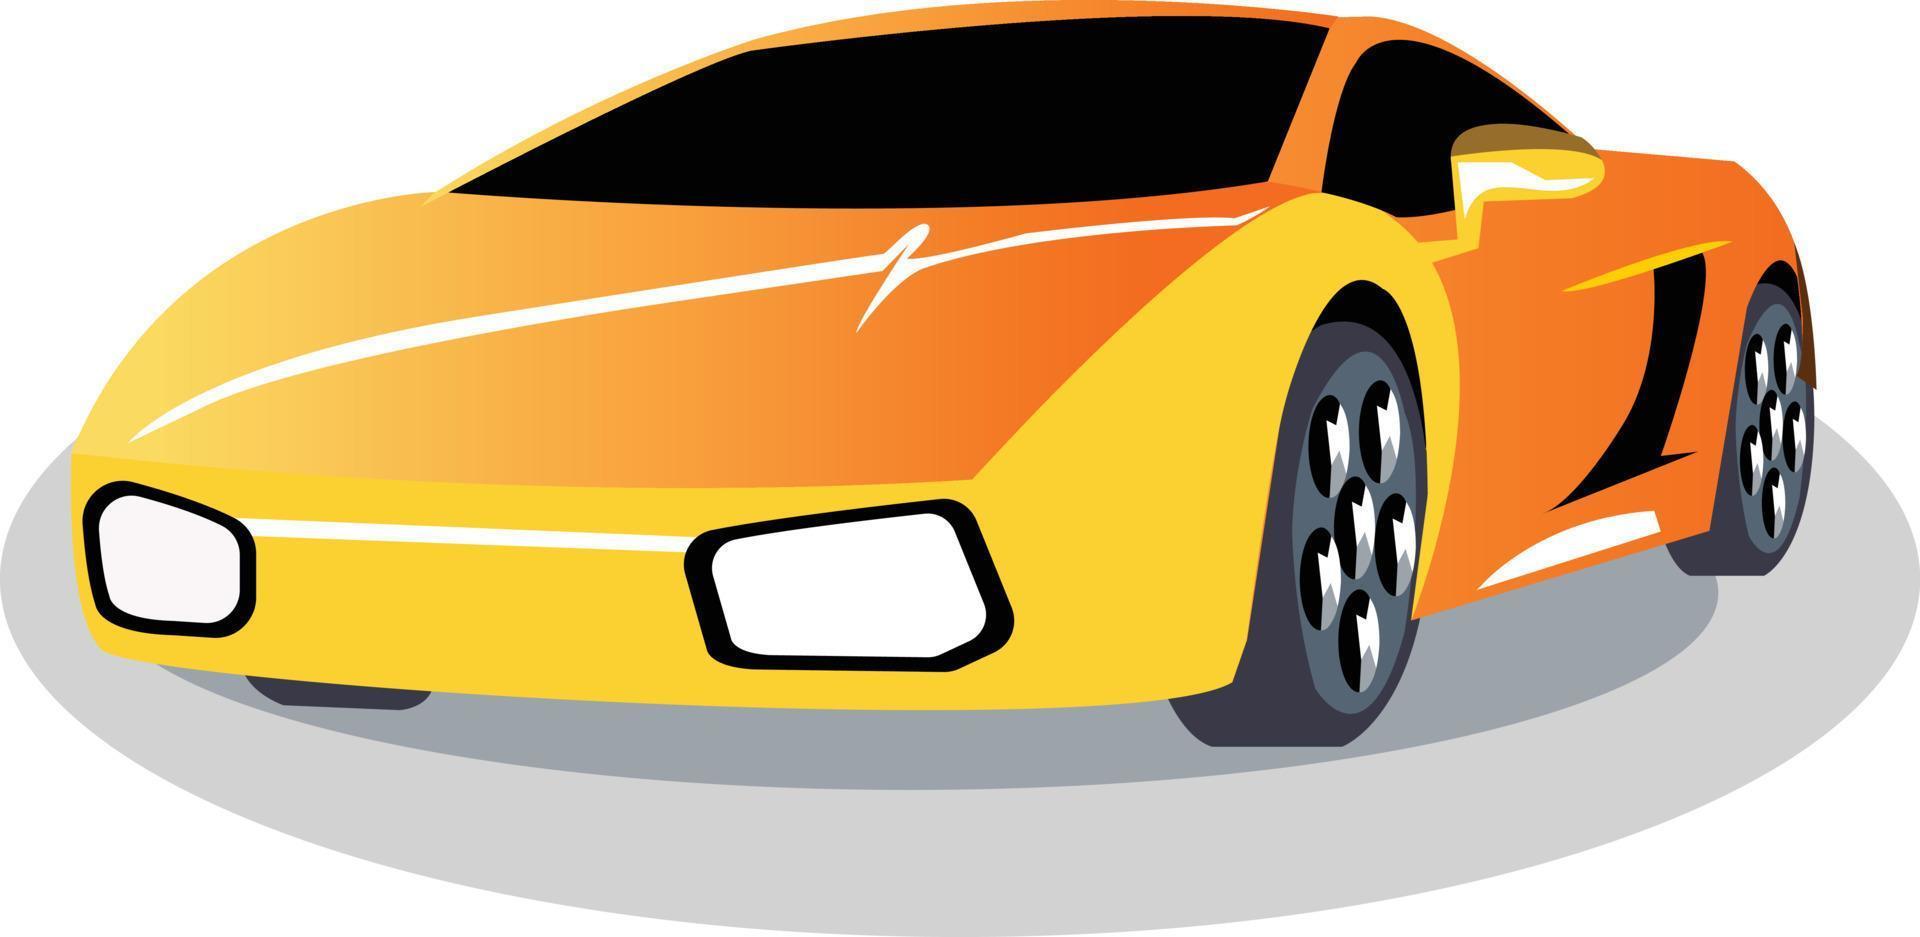 voiture de luxe dégradée pour un transport confortable. vecteur de voiture de conception pour l'animation de dessin animé 2d.